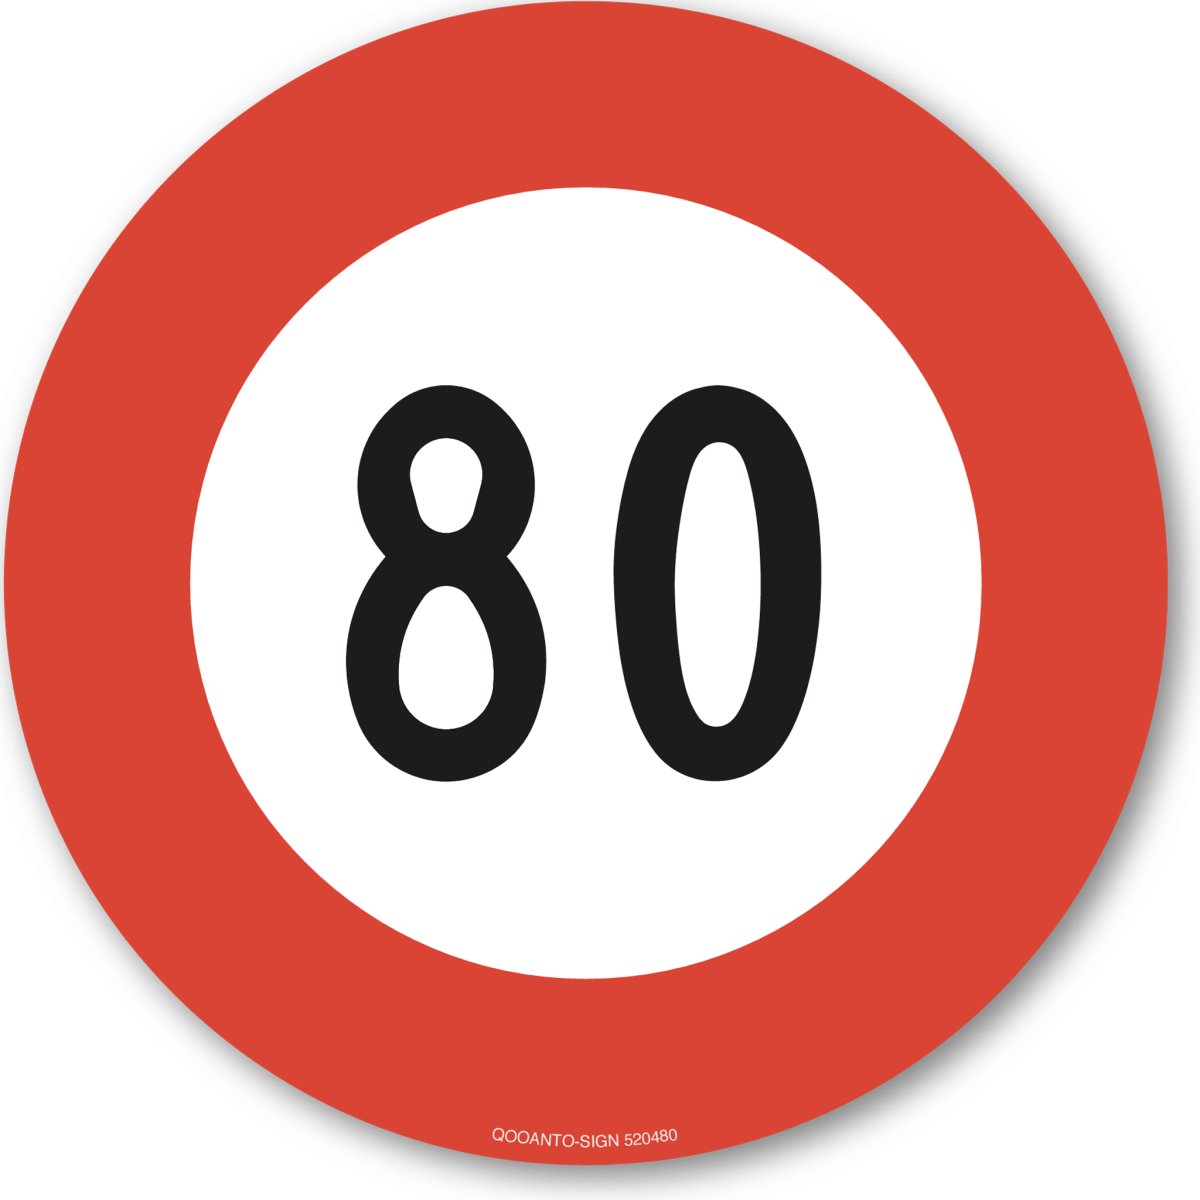 80 Höchstgeschwindigkeit Verkehrsschild oder Aufkleber aus Alu-Verbund oder Selbstklebefolie mit UV-Schutz - QOOANTO-SIGN